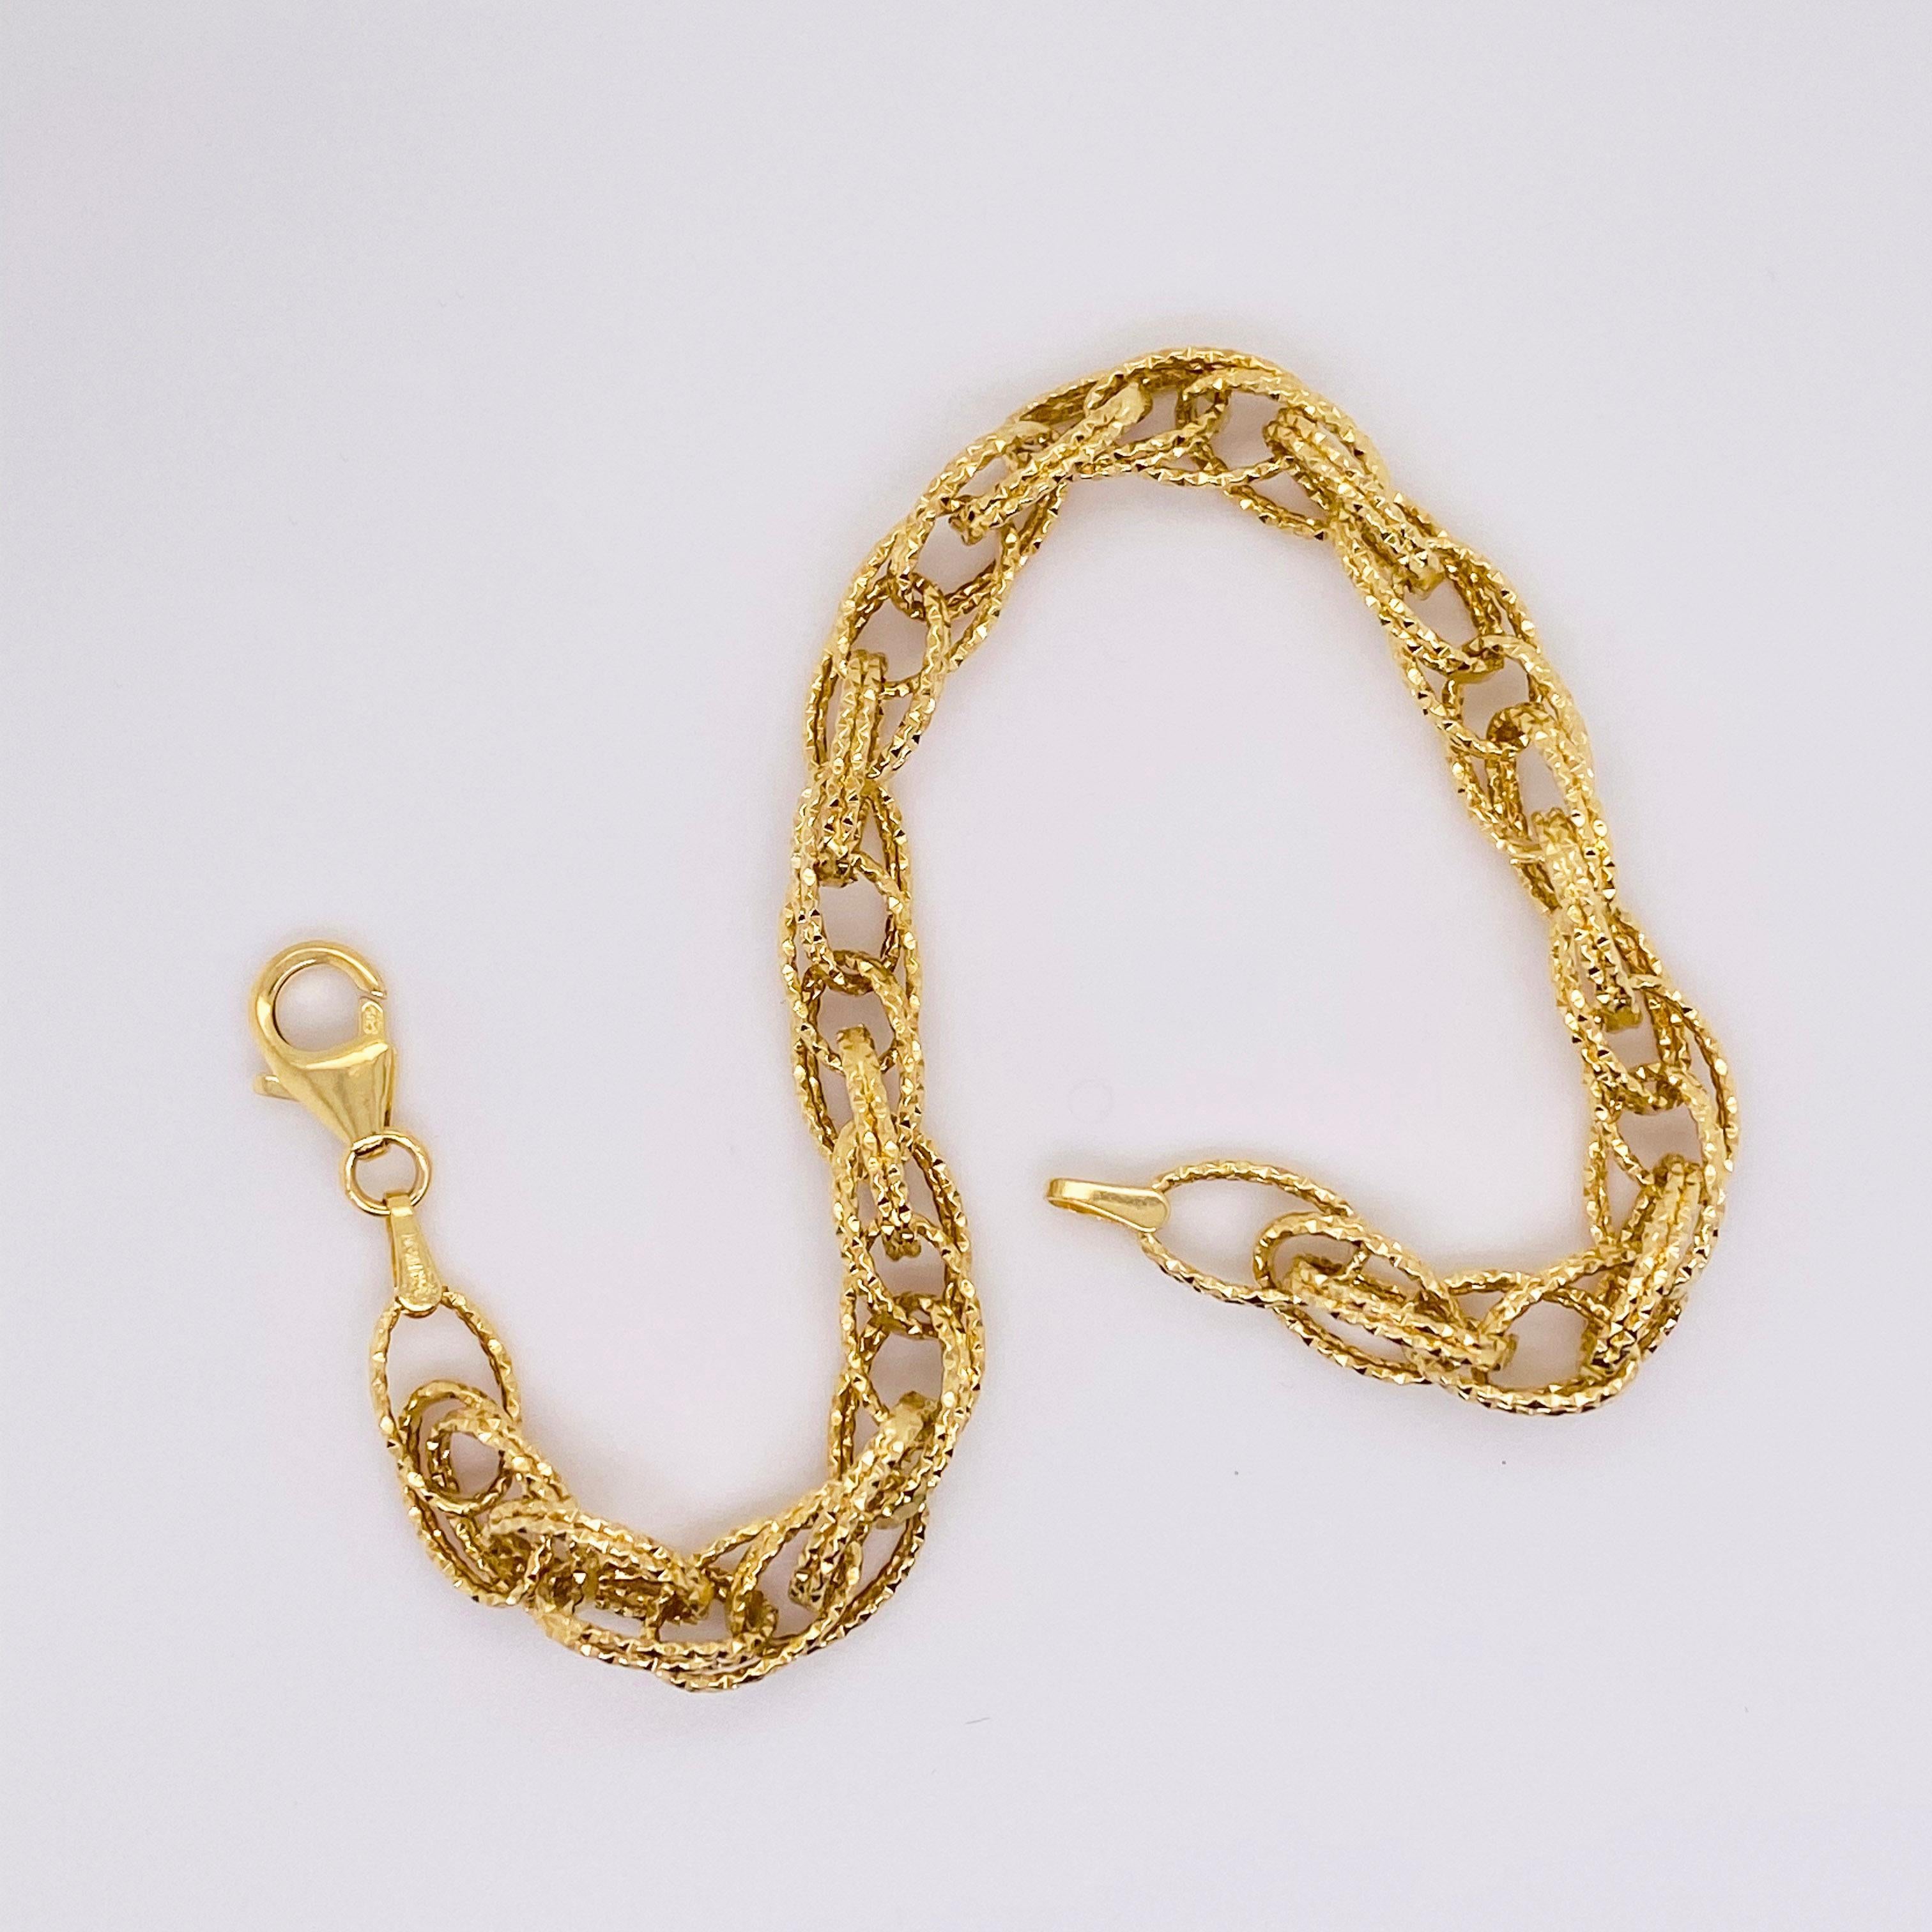 4 gram gold bracelet designs